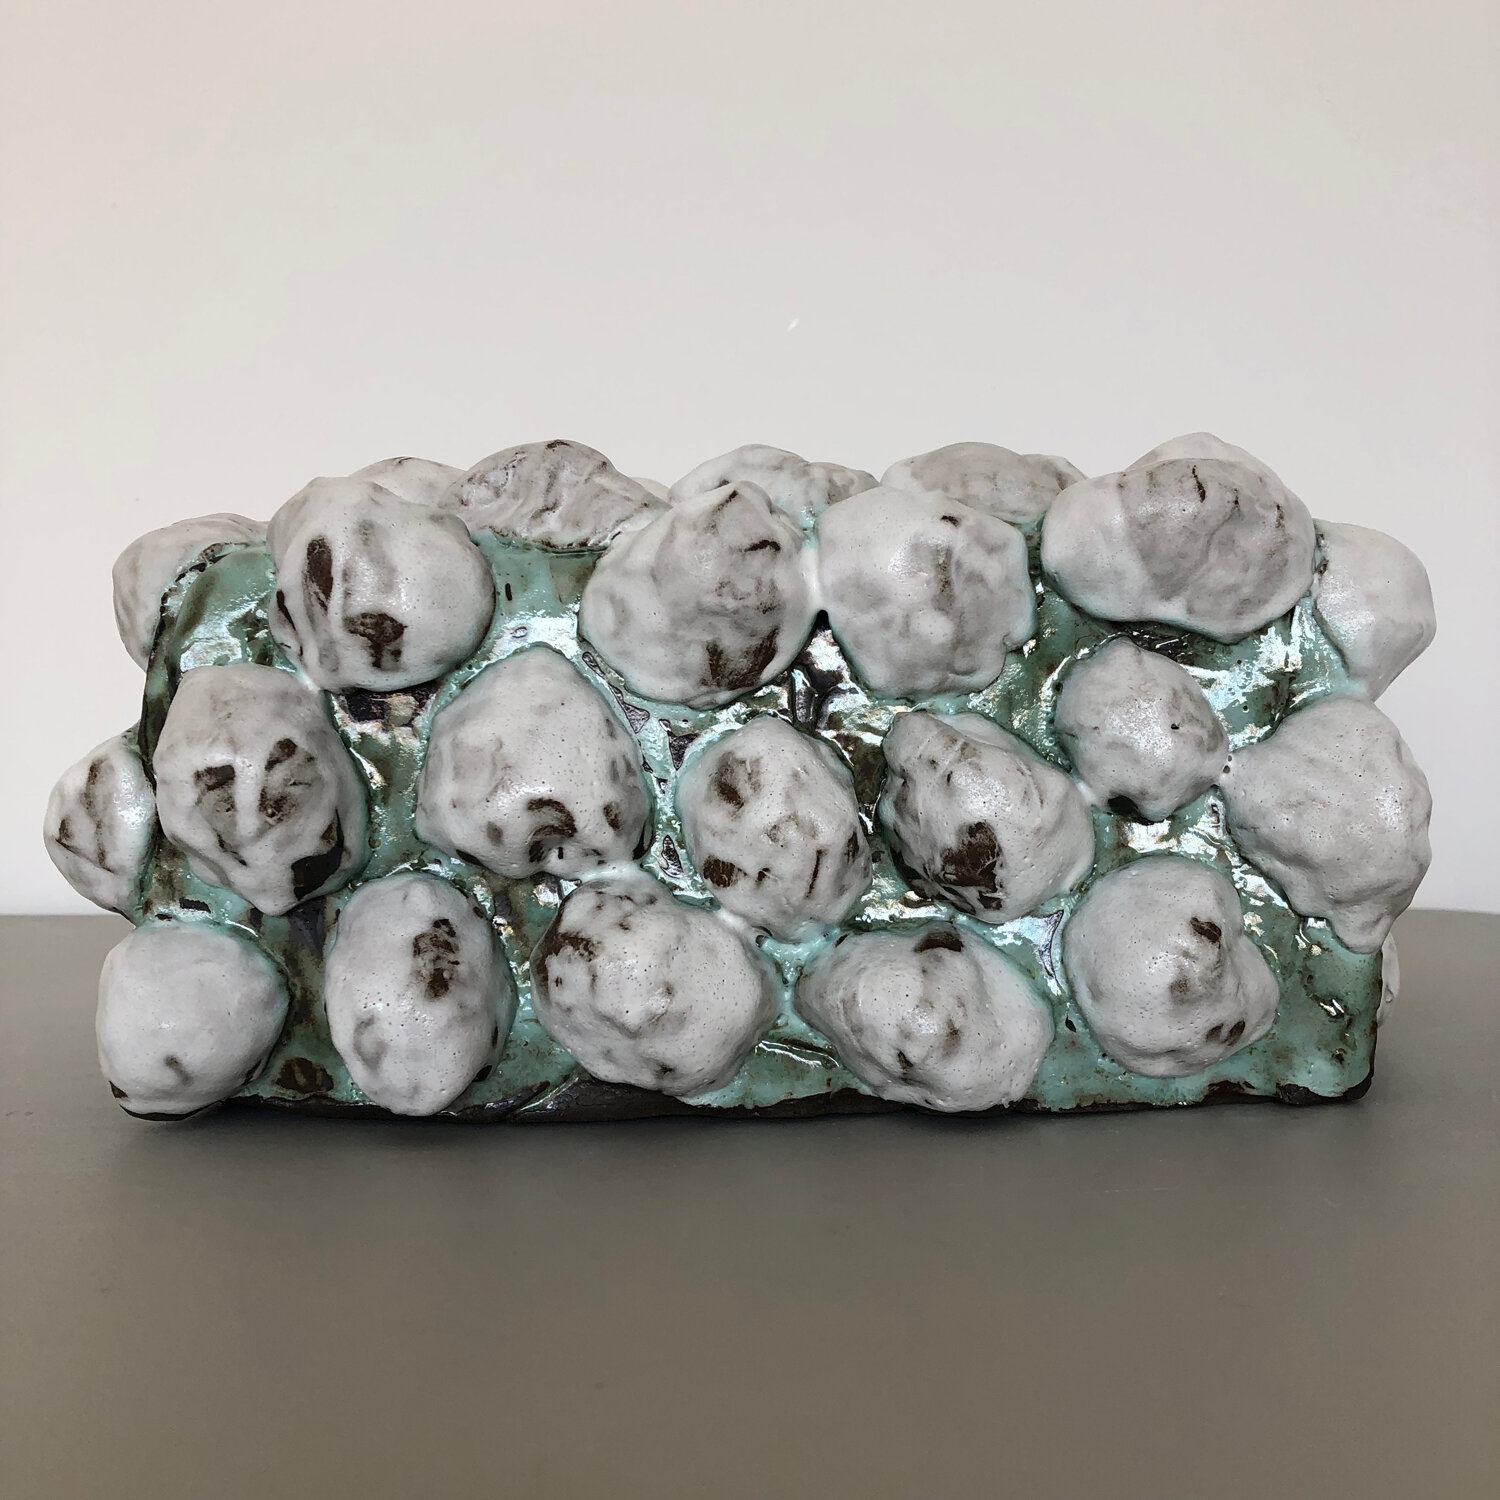 Funerary Box, 2019, glazed ceramic, 5 1/2 x 12 x 8"